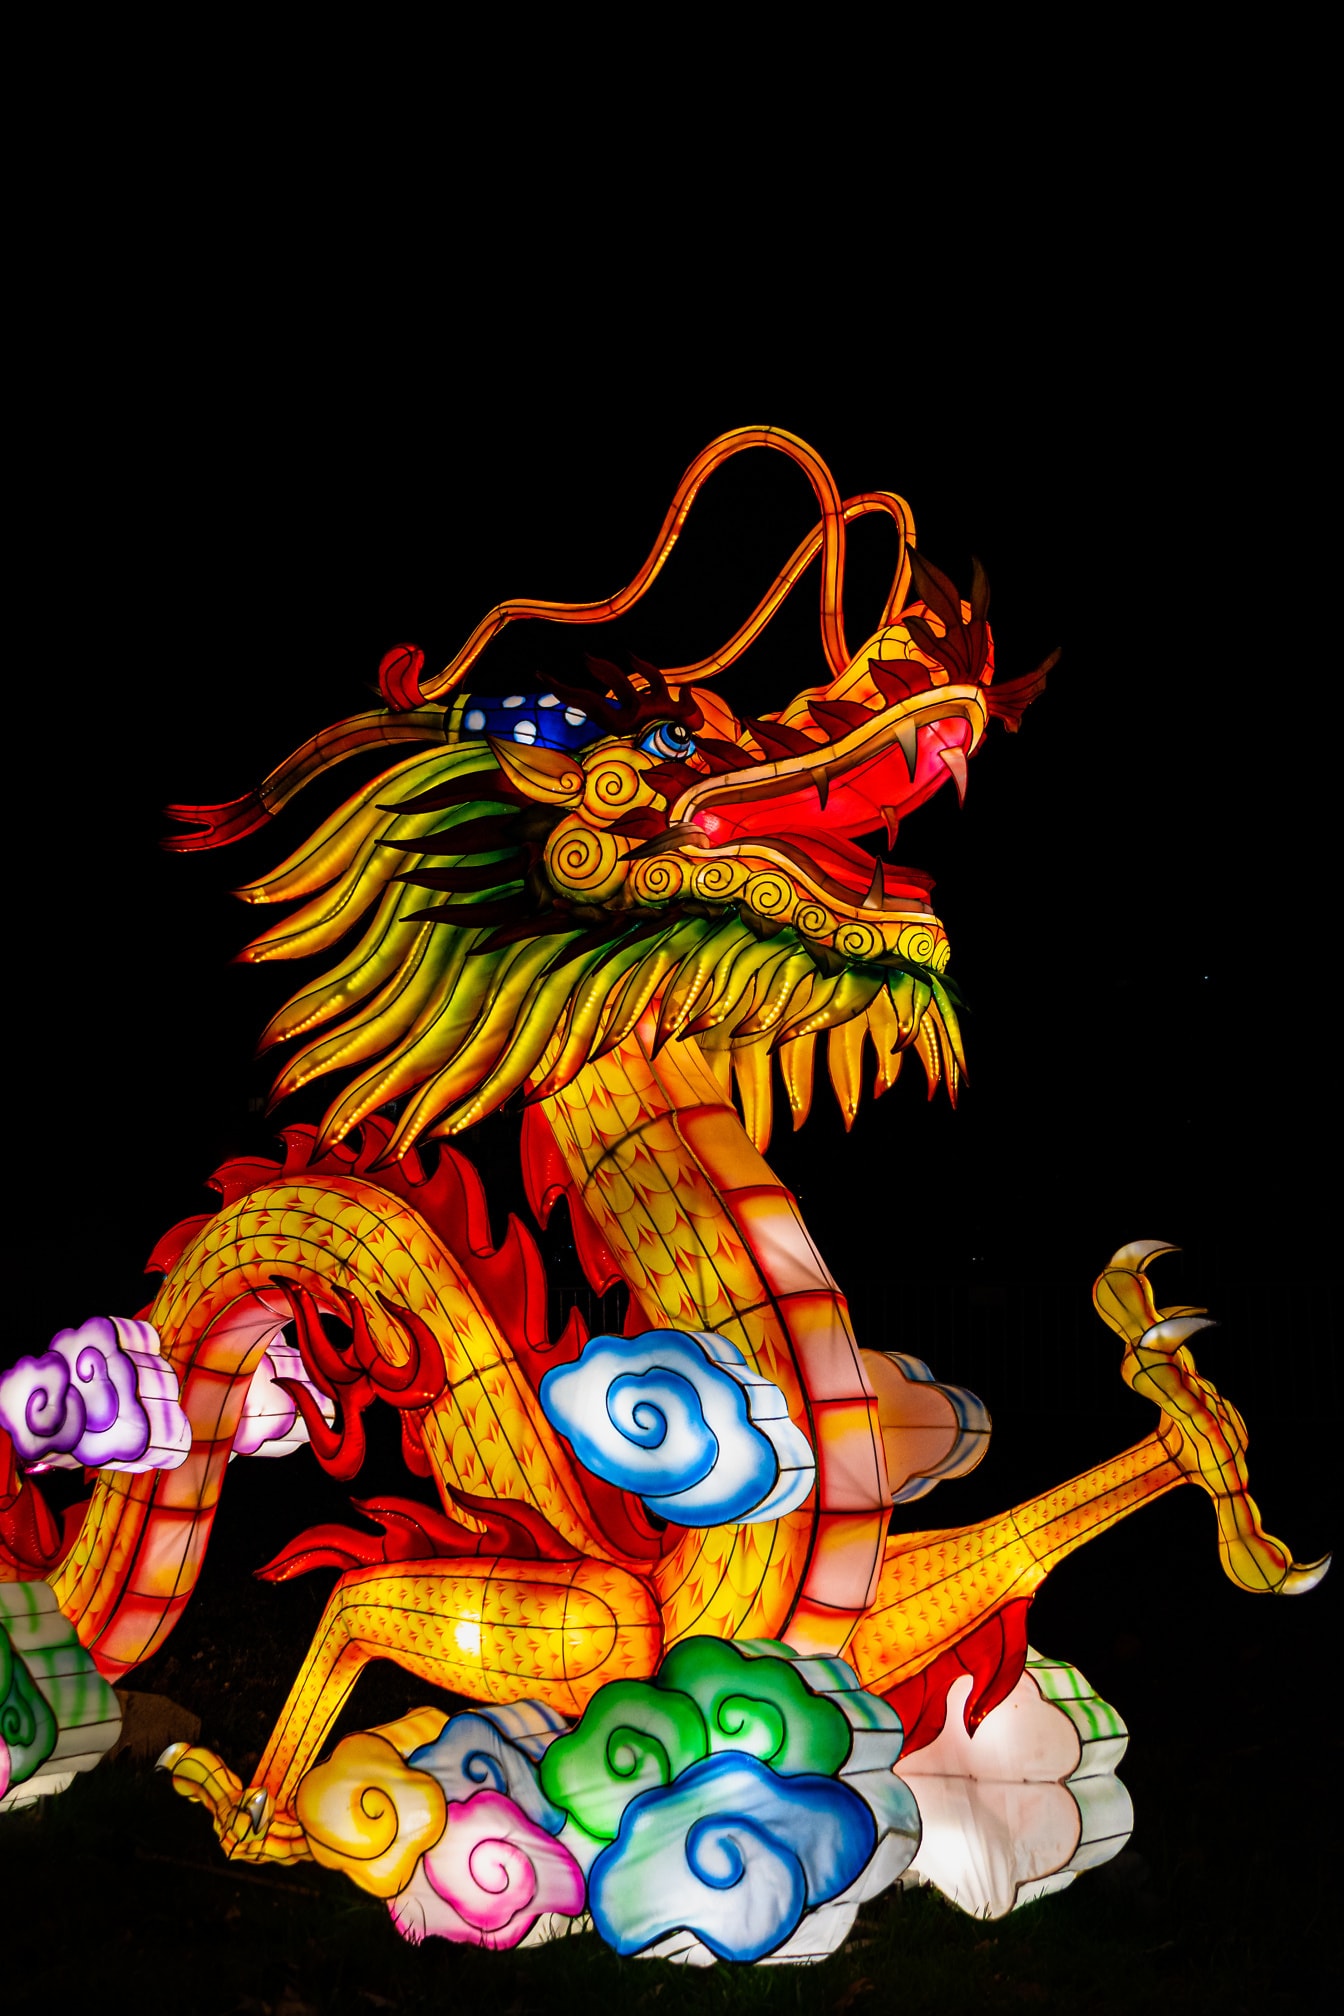 Dragón chino, una colorida escultura en el festival de los farolillos chinos, también conocido como festival de Shangyuan